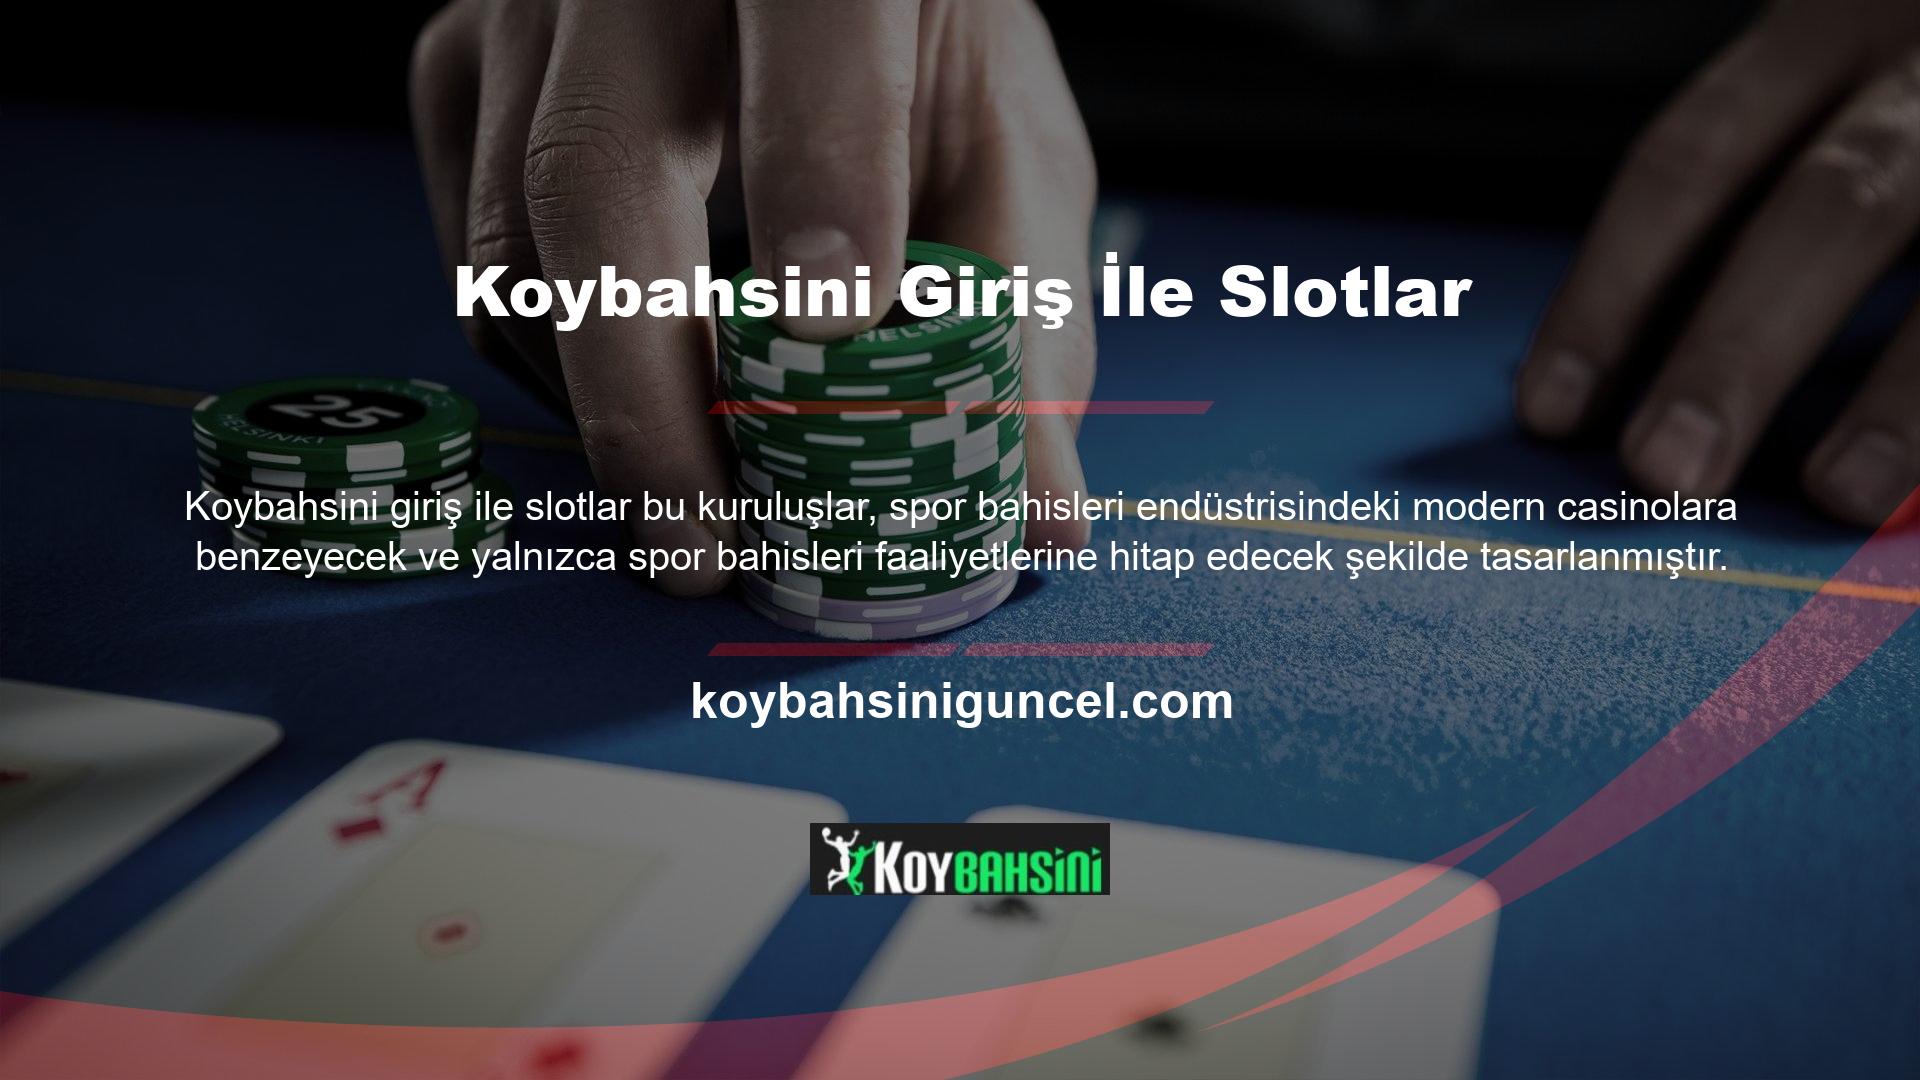 Koybahsini Casino'nun E-spor bölümü, başta futbol tutkunları olmak üzere birçok spor tutkununun ana çekim noktası olduğundan, bu şirketler ve yerel kuruluşlar milyonlarca bahisçiyi çekmeyi amaçlamaktadır